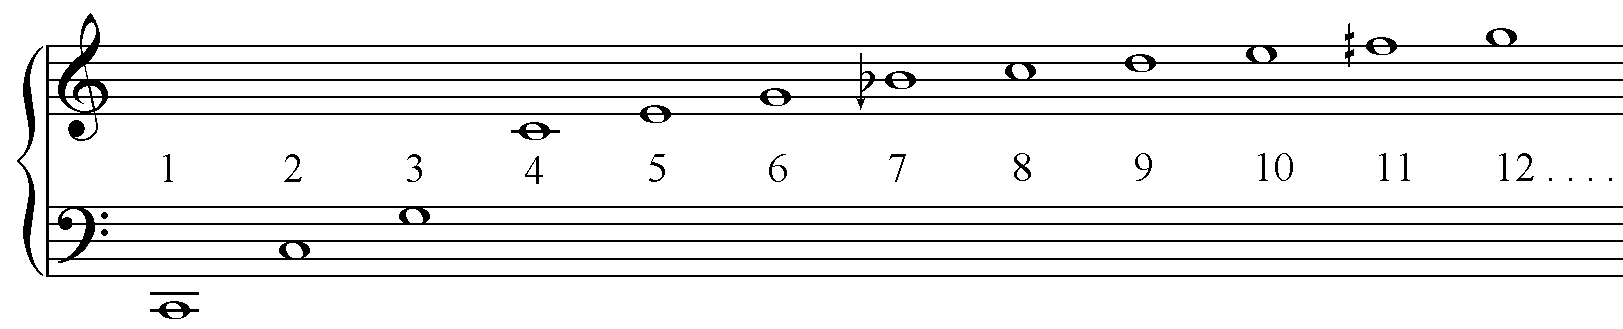 Harmonic series on C (65.4Hz)